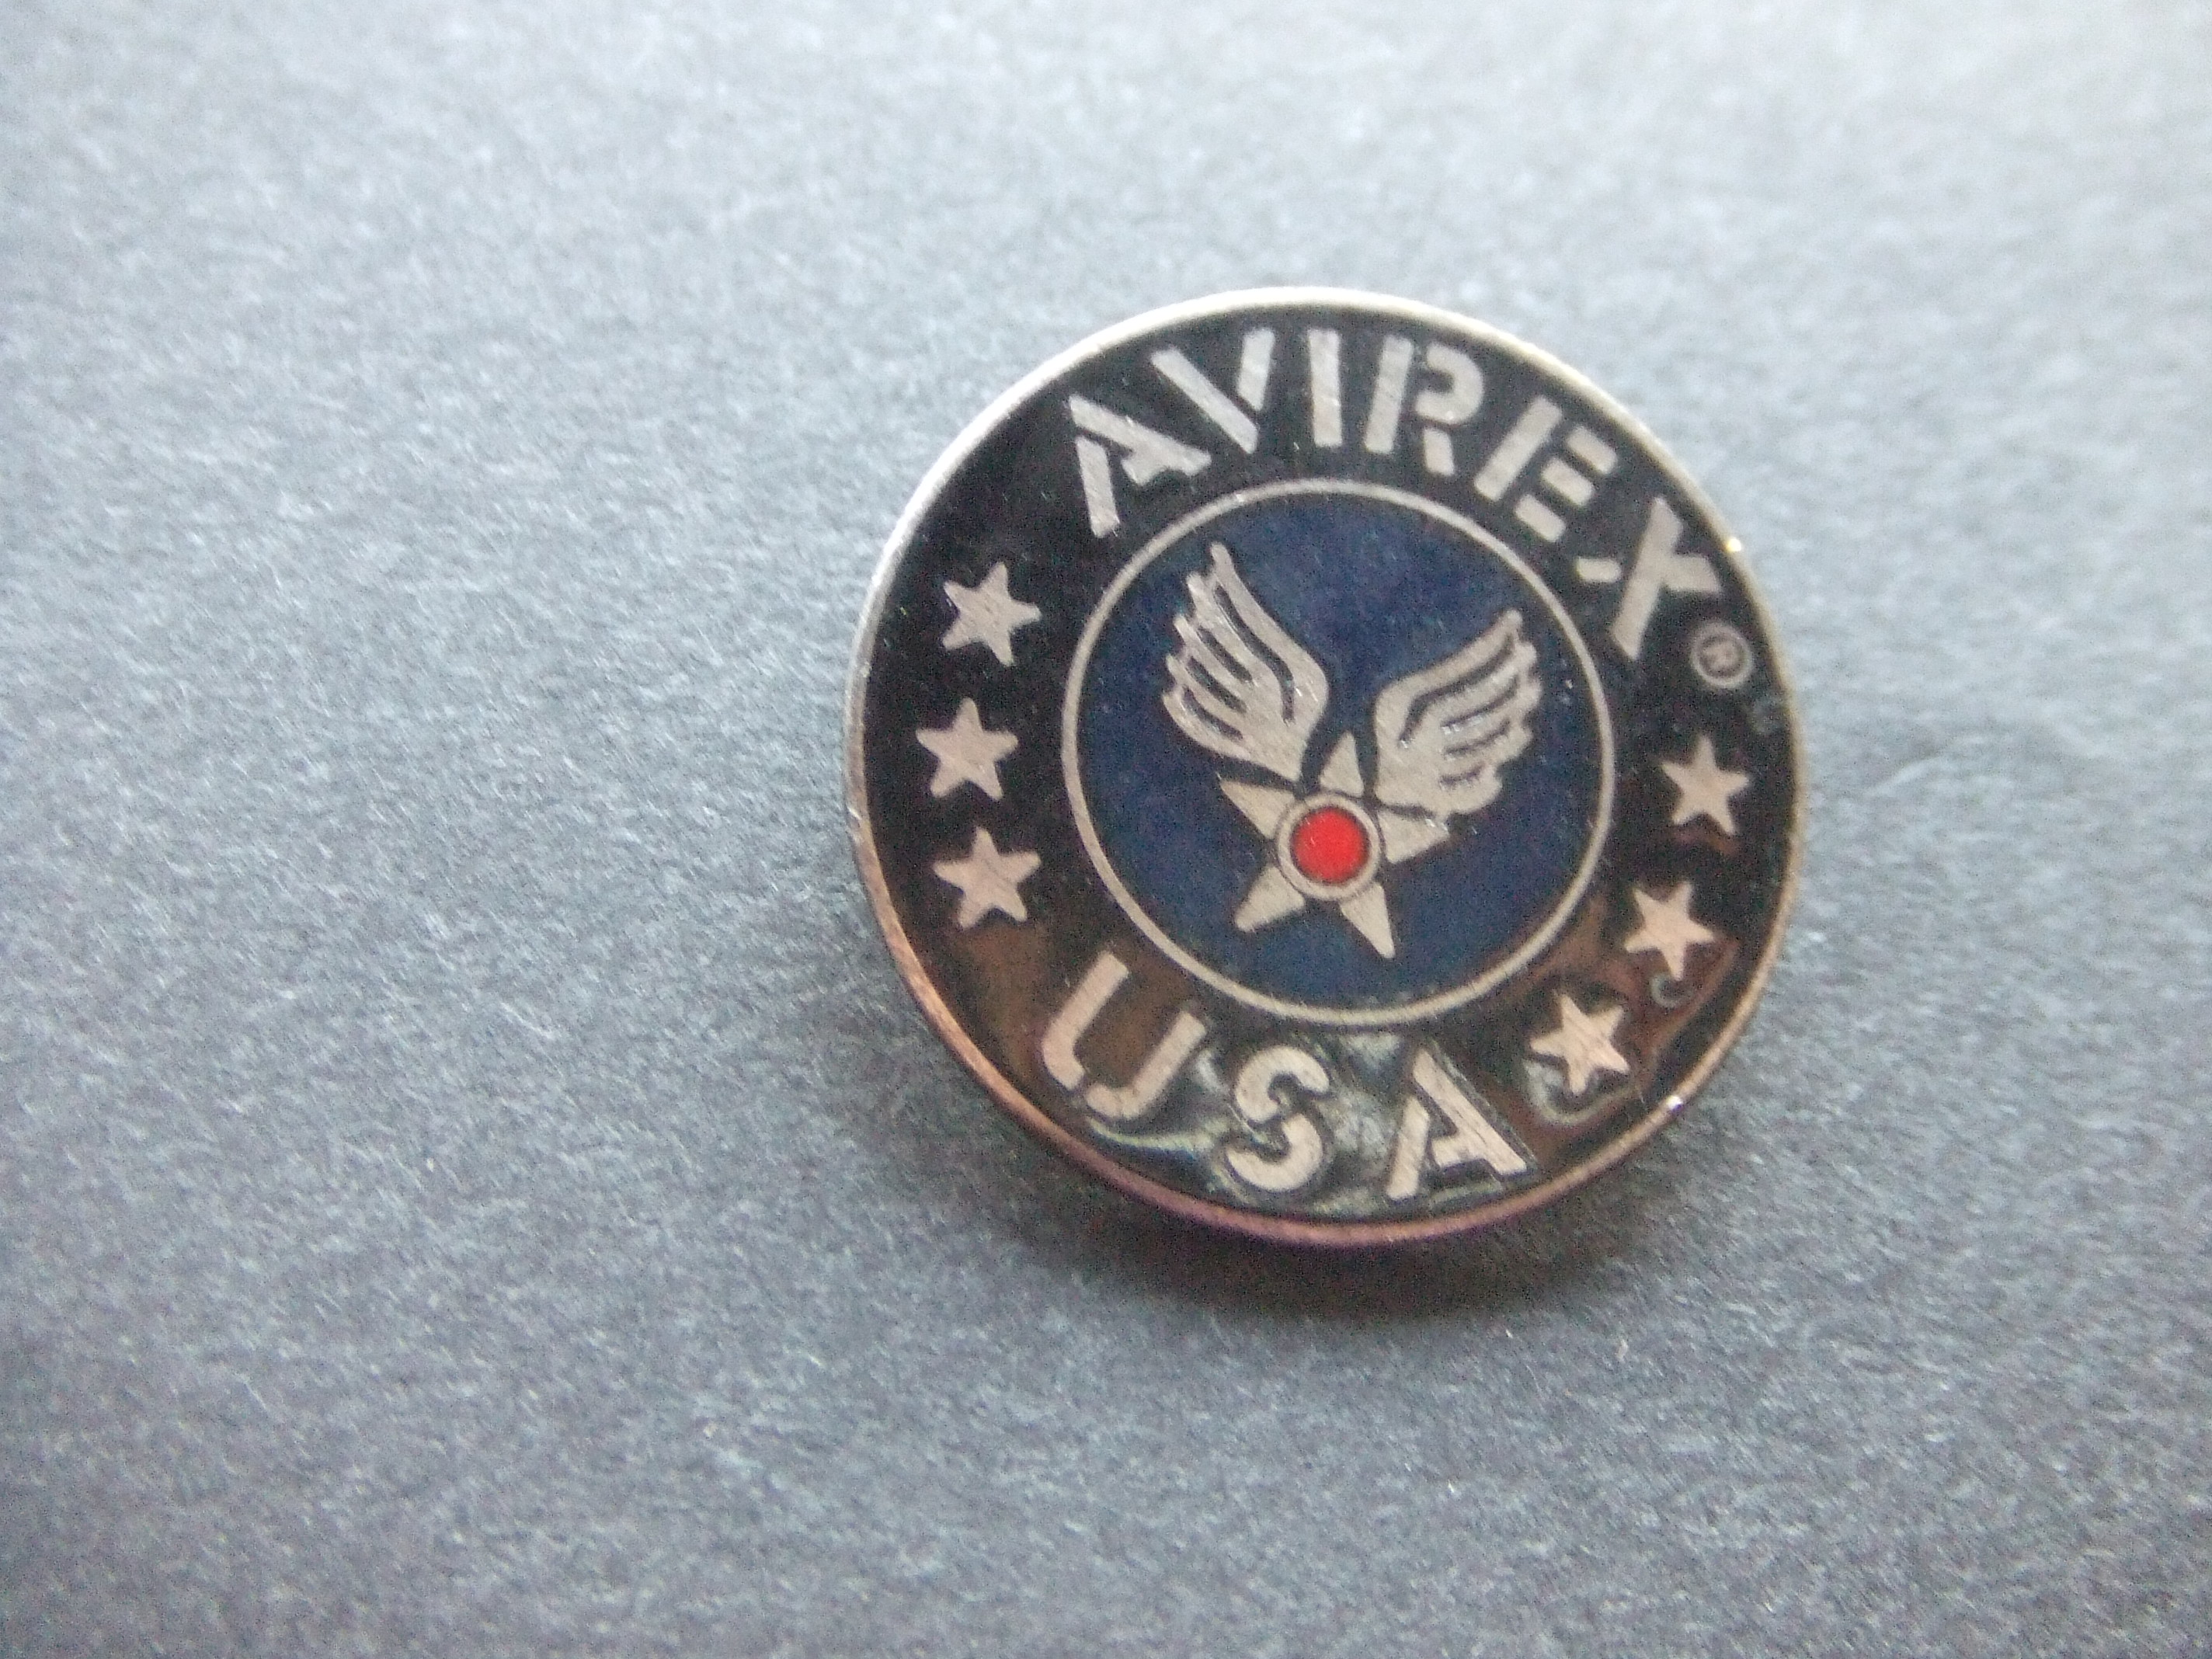 Avirex Amerikaans bedrijf kleding en ontwerp ,logo